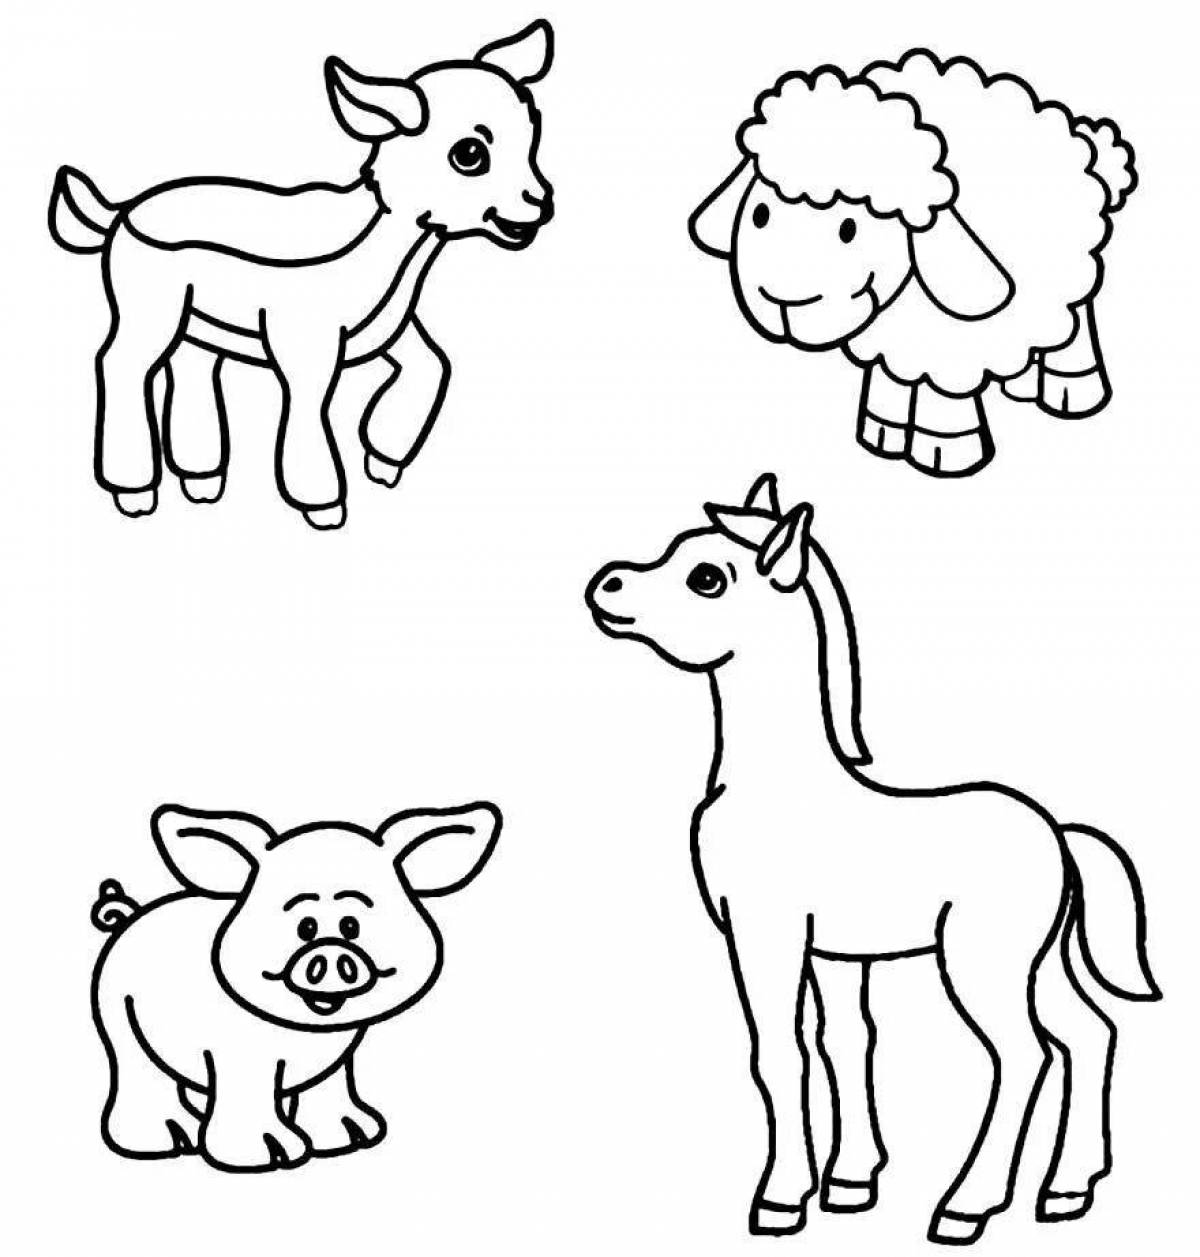 Игривая раскраска домашних животных для детей 5-6 лет